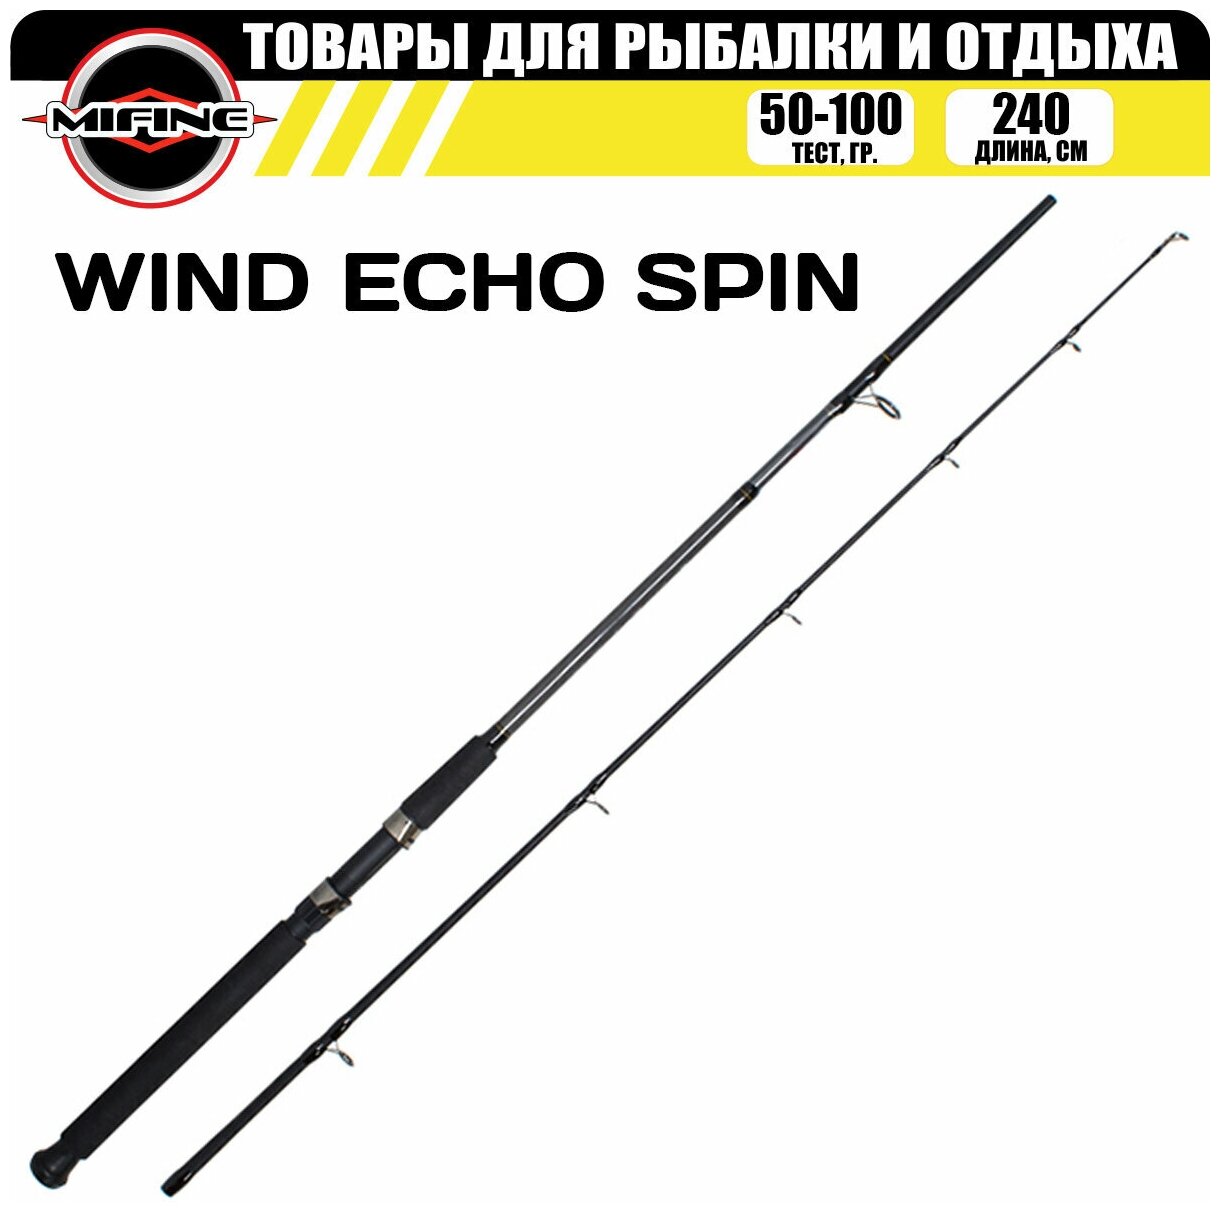 Спиннинг штекерный MIFINE WIND ECHO SPIN 2.40м (50-100гр), рыболовный, для рыбалки